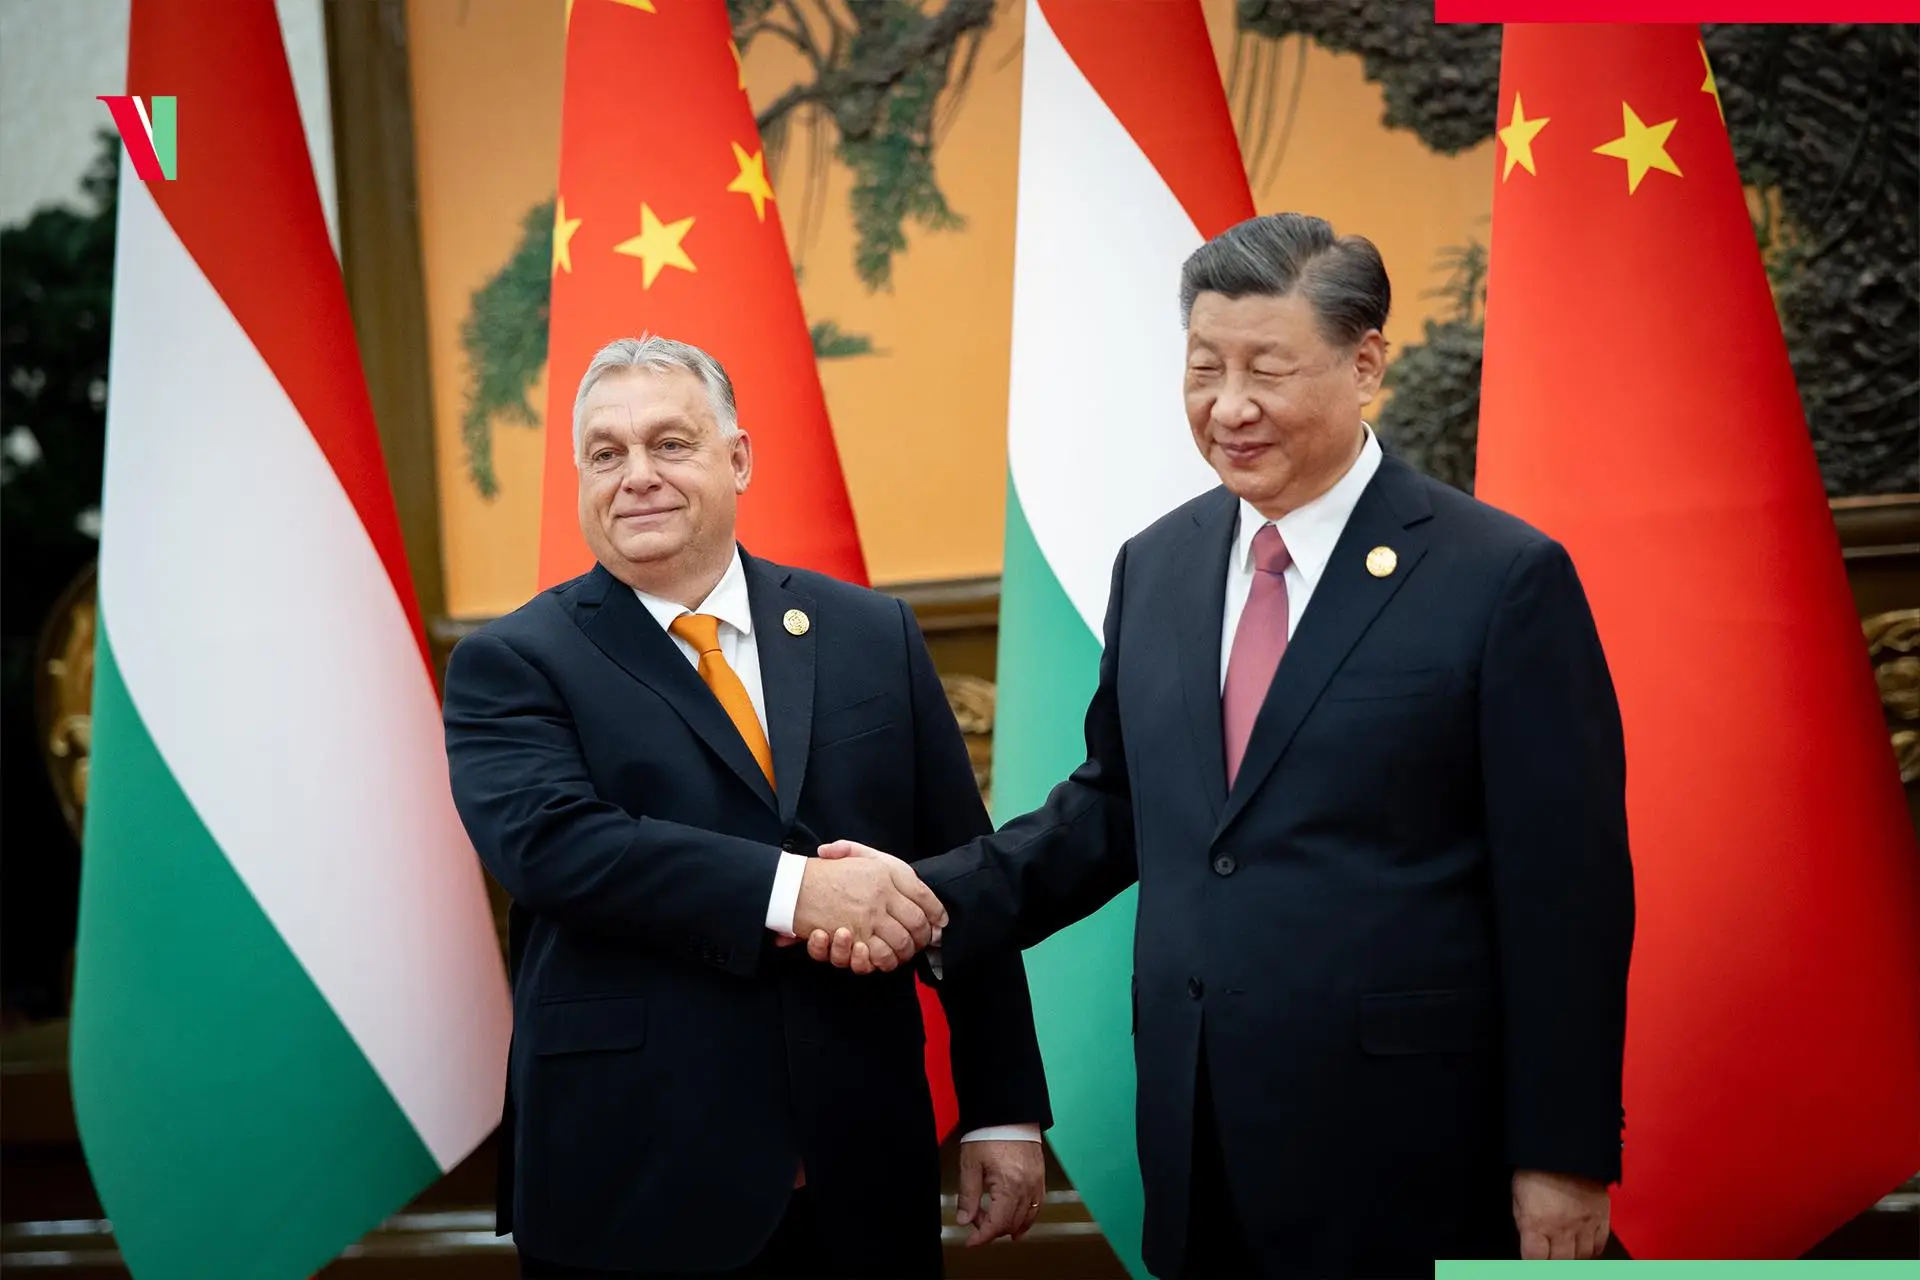 Premijer Orbán Xi Jinping u Pekingu kineski predsjednik